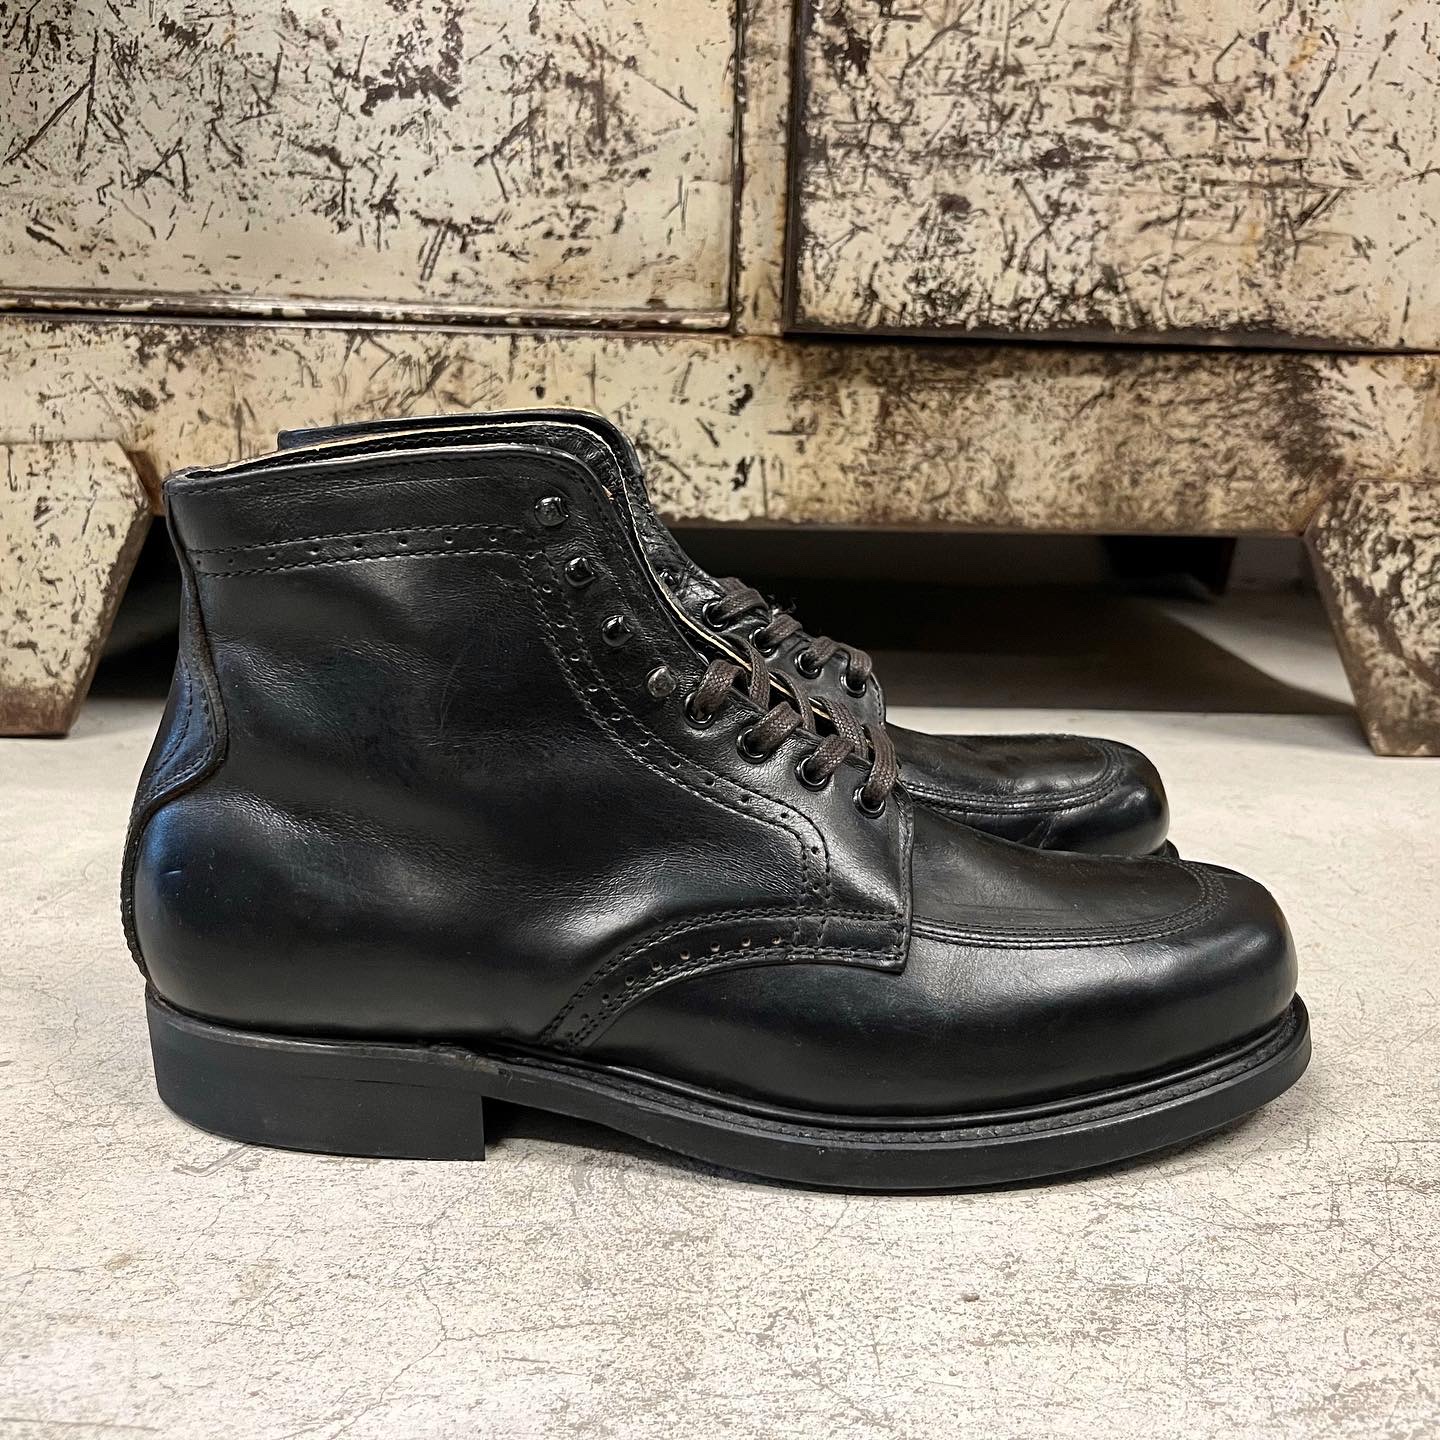 Vintage Mason Moctoe Boots Size 9D